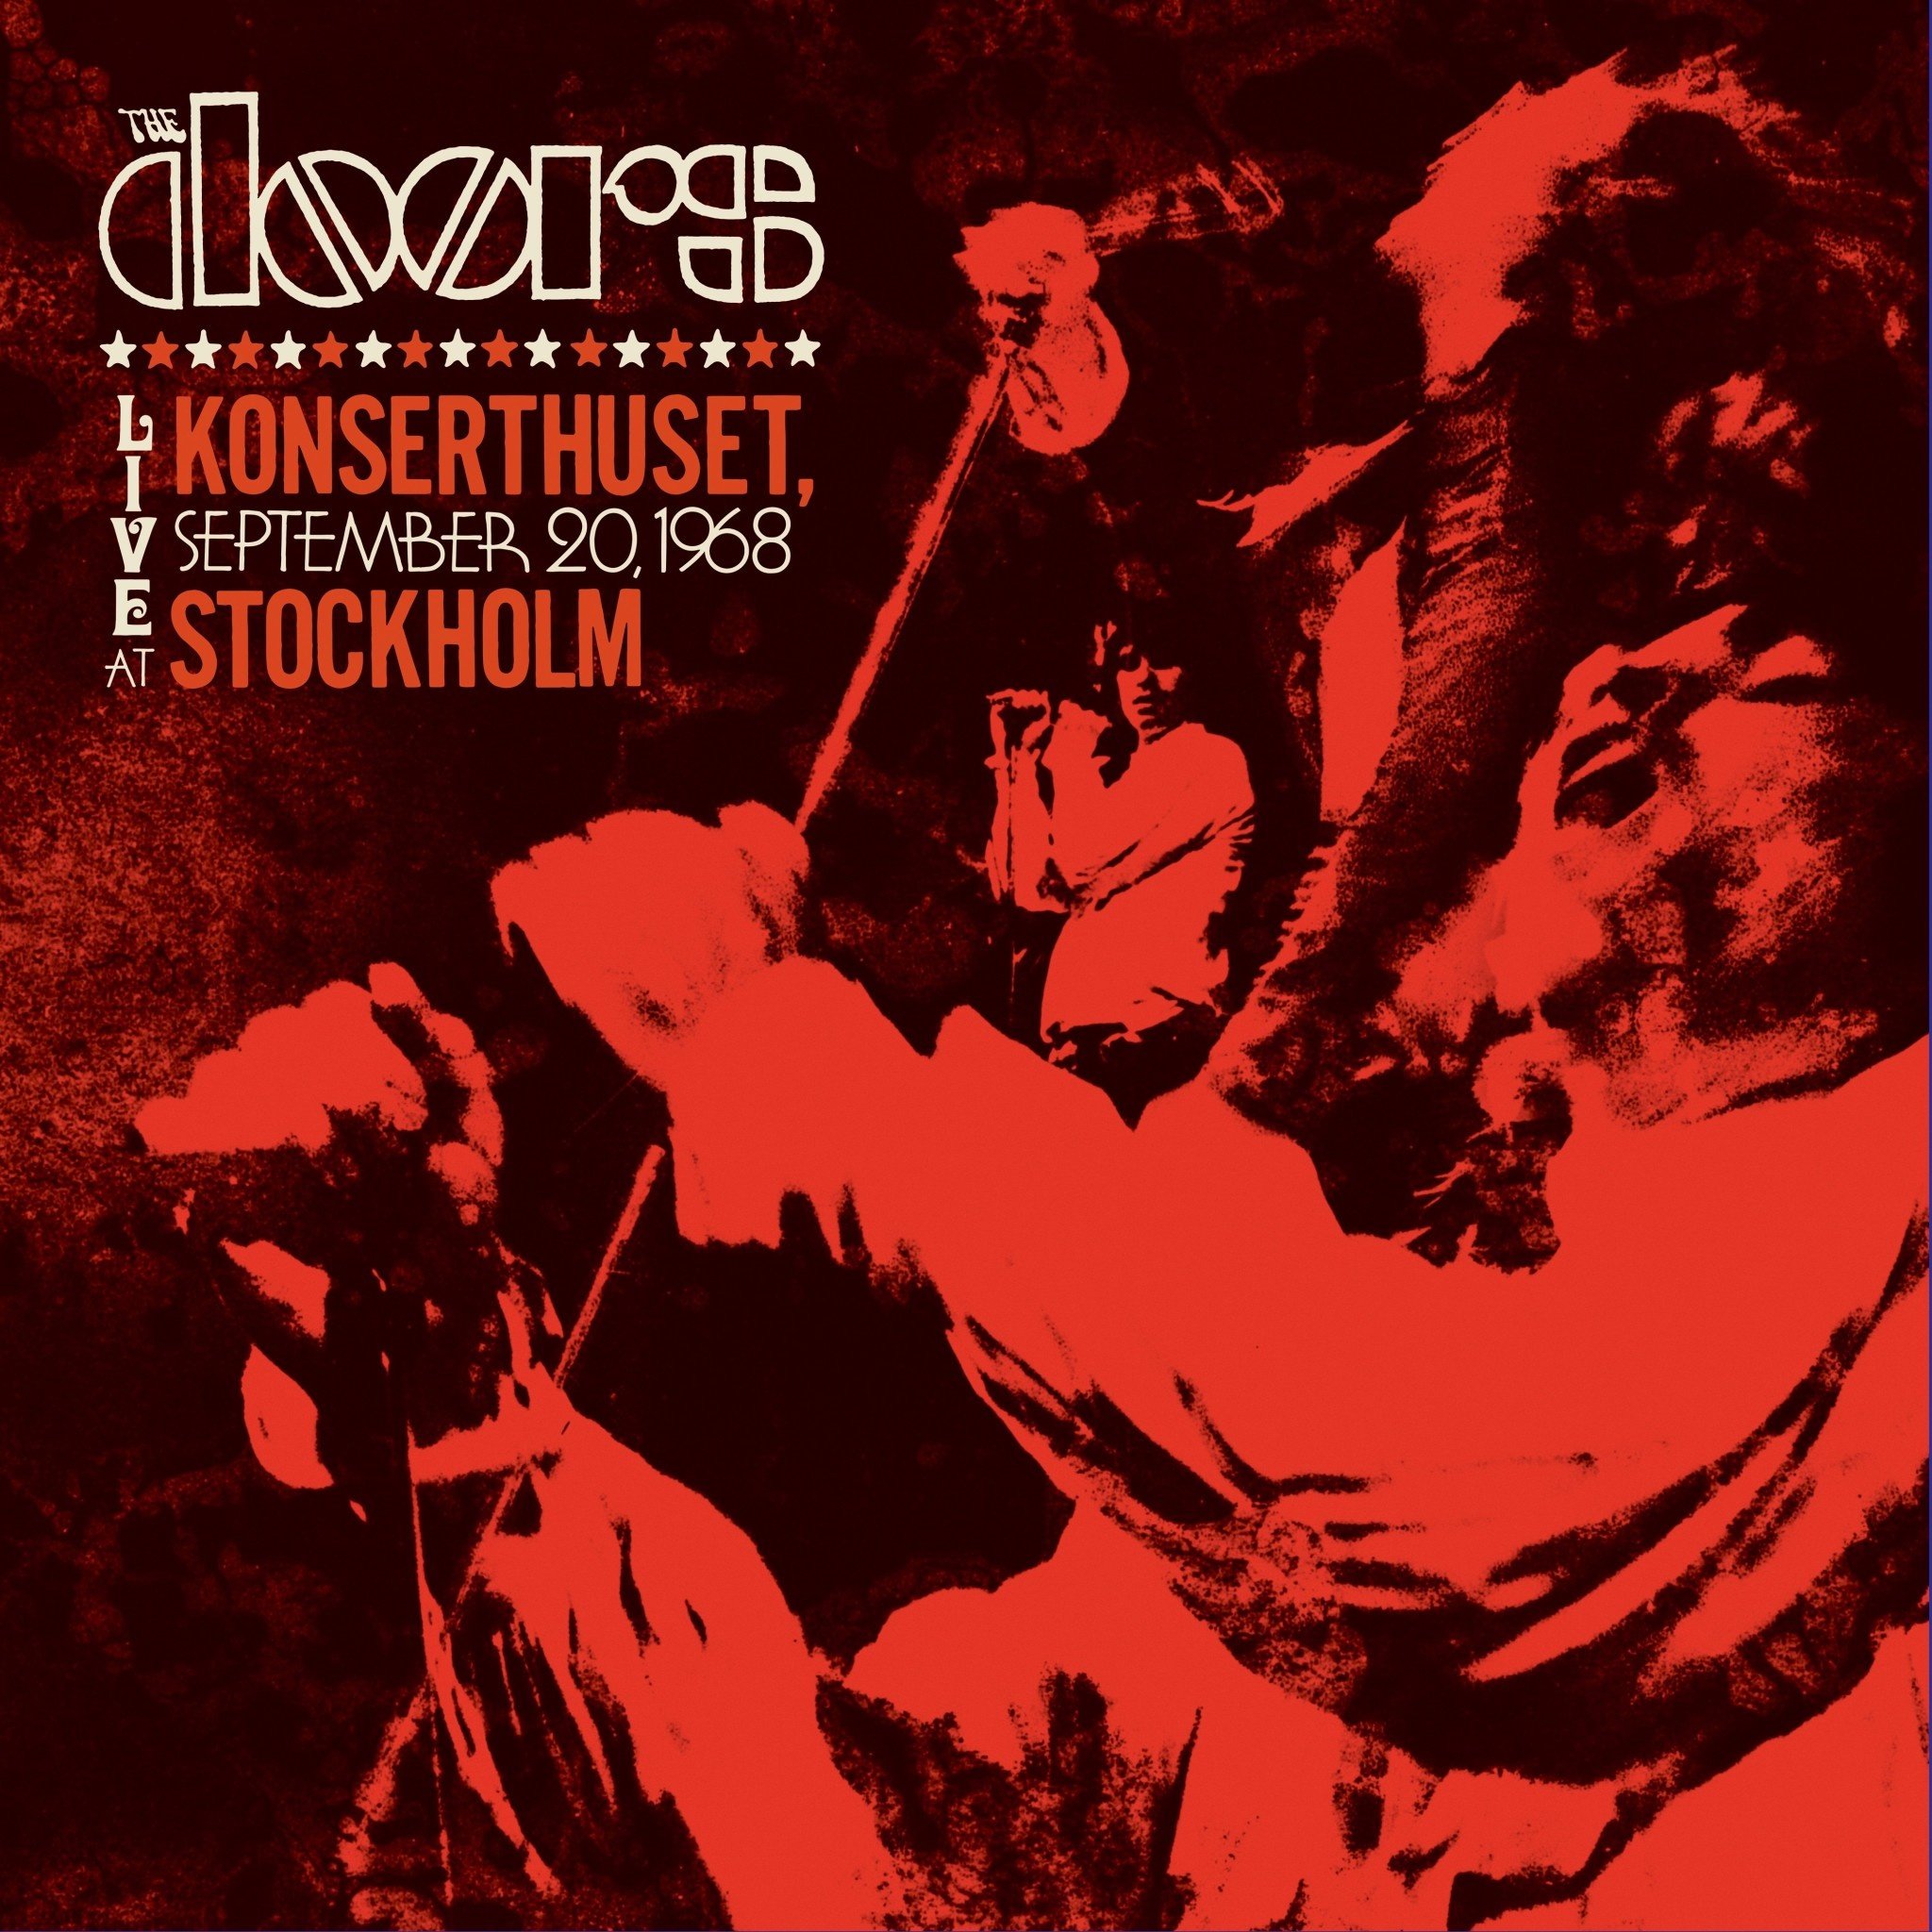 The Doors - Live In Konserthuset, Stockholm (RSD) [Light Blue Vinyl]